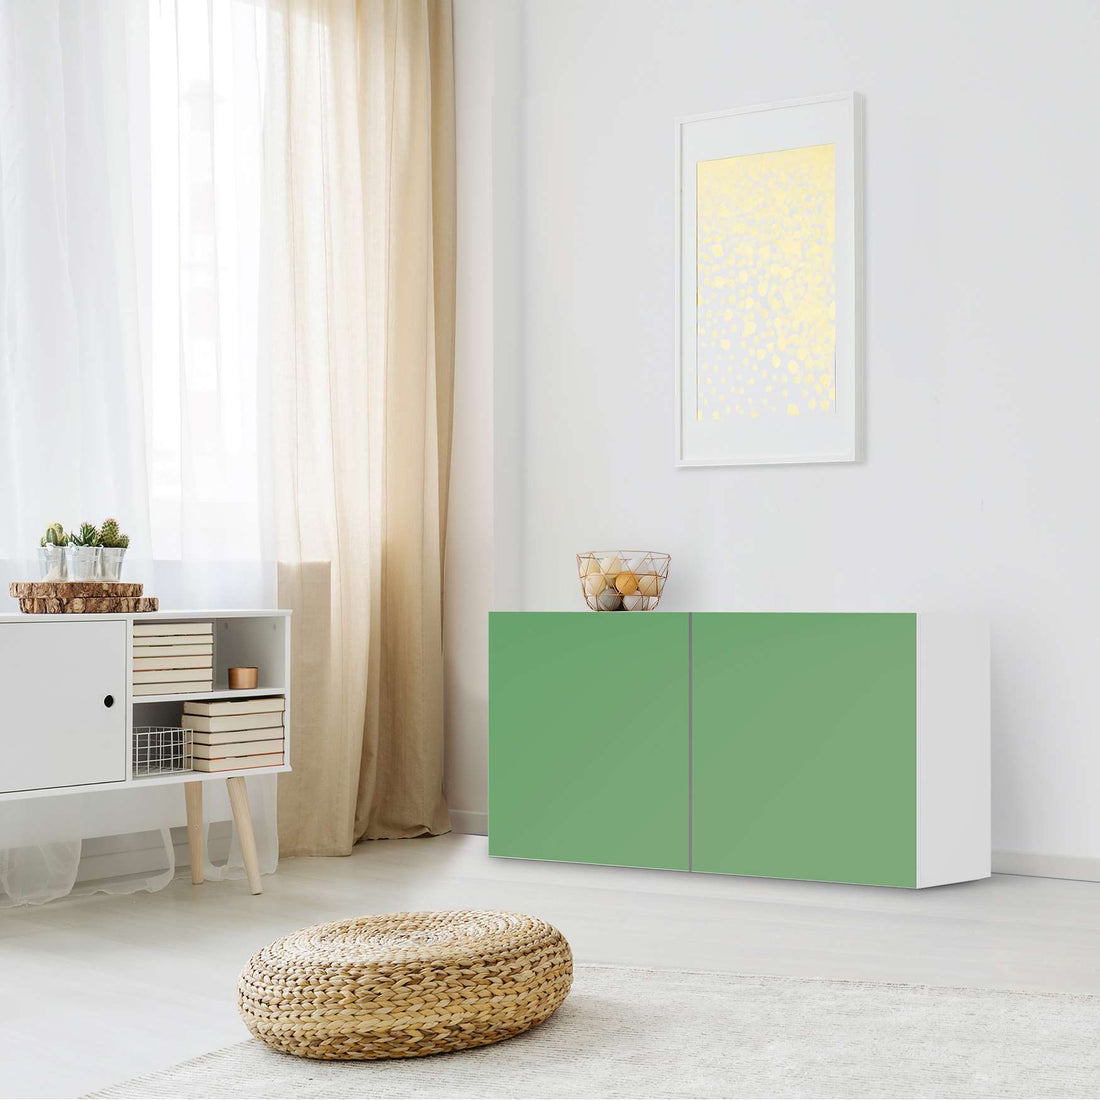 Folie für Möbel Grün Light - IKEA Besta Regal Quer 2 Türen - Wohnzimmer